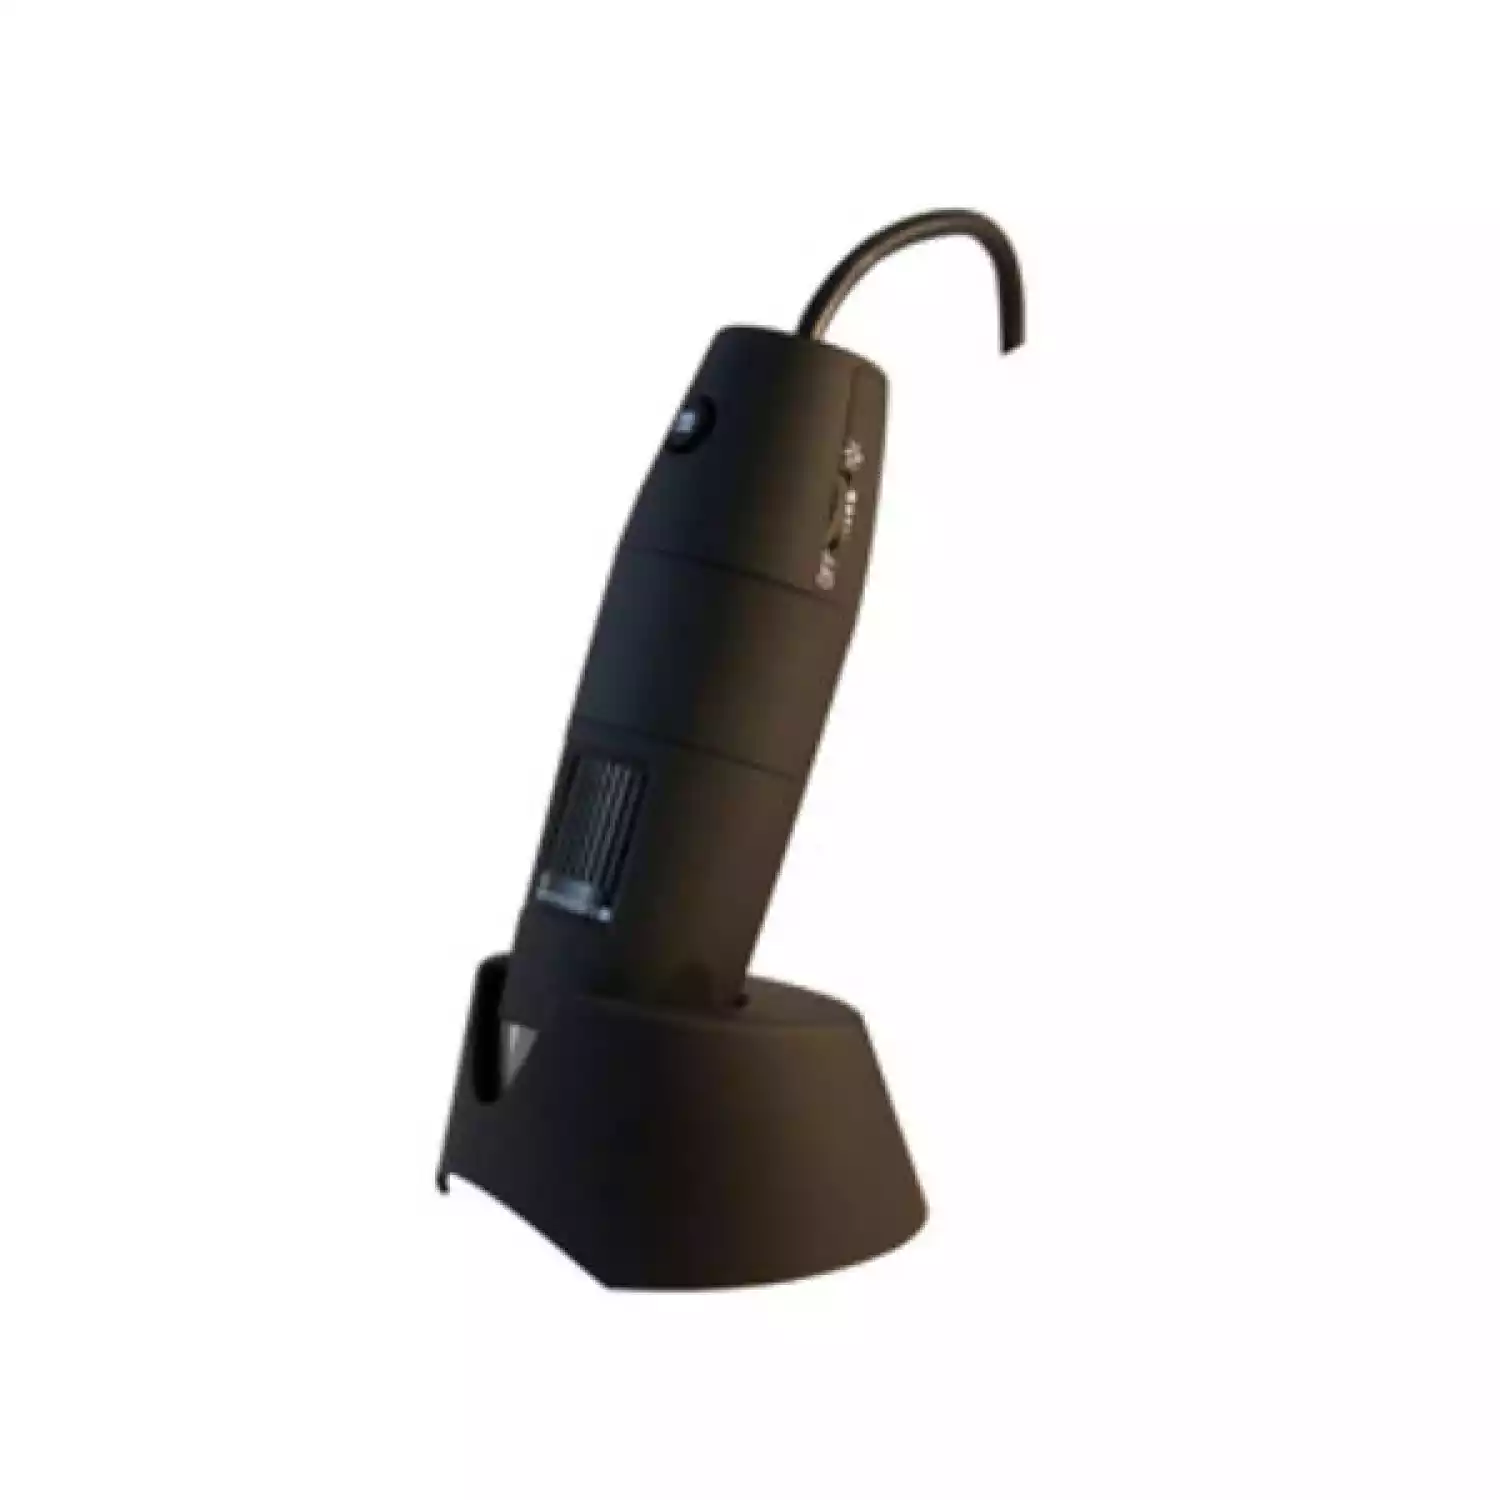 USB-микроскоп PCE MM 200 UV c ультрафиолетовой подсветкой - 3